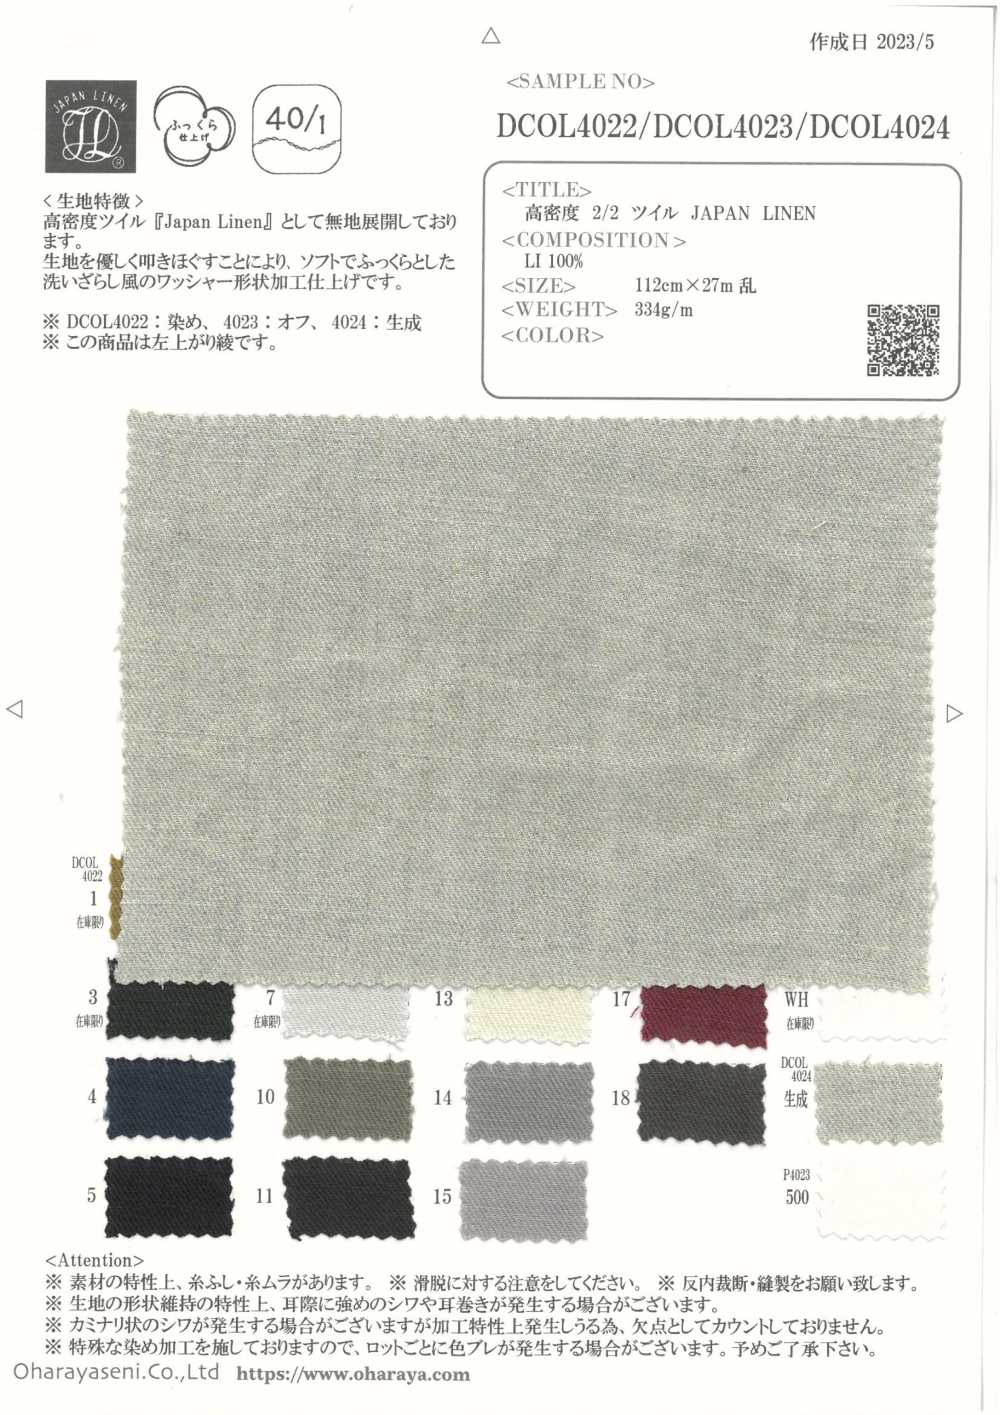 DCOL4022 Vải Chéo 2/2 Mật độ Cao JAPAN LINEN Oharayaseni